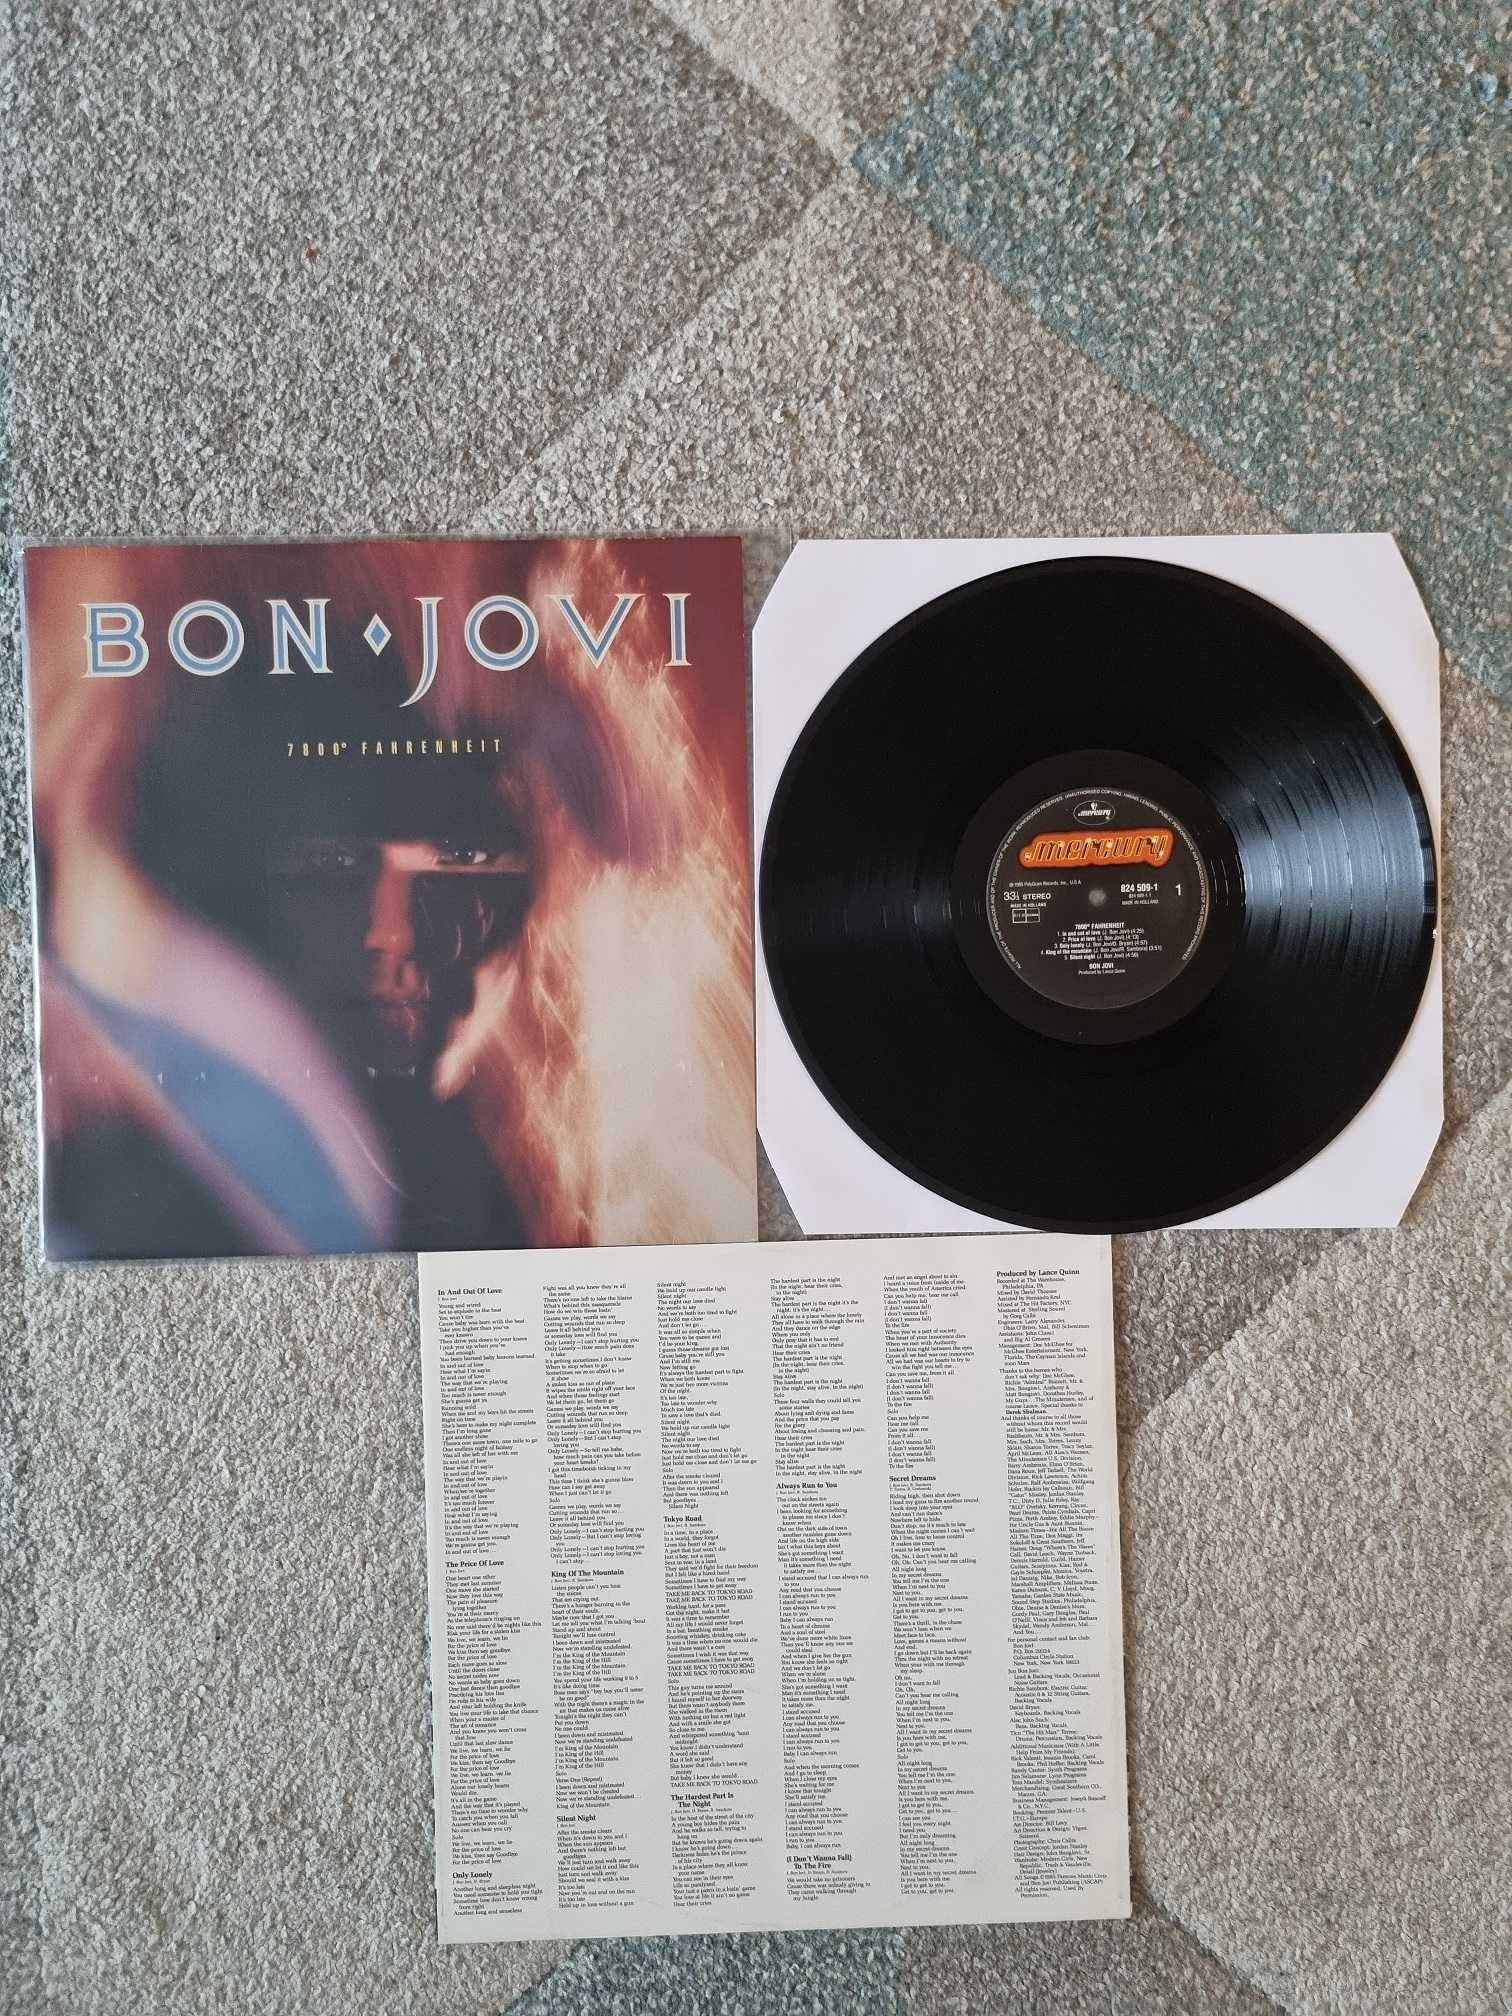 Discuri vinil (muzica) - Bon Jovi, Jovanotti, Billy Idol